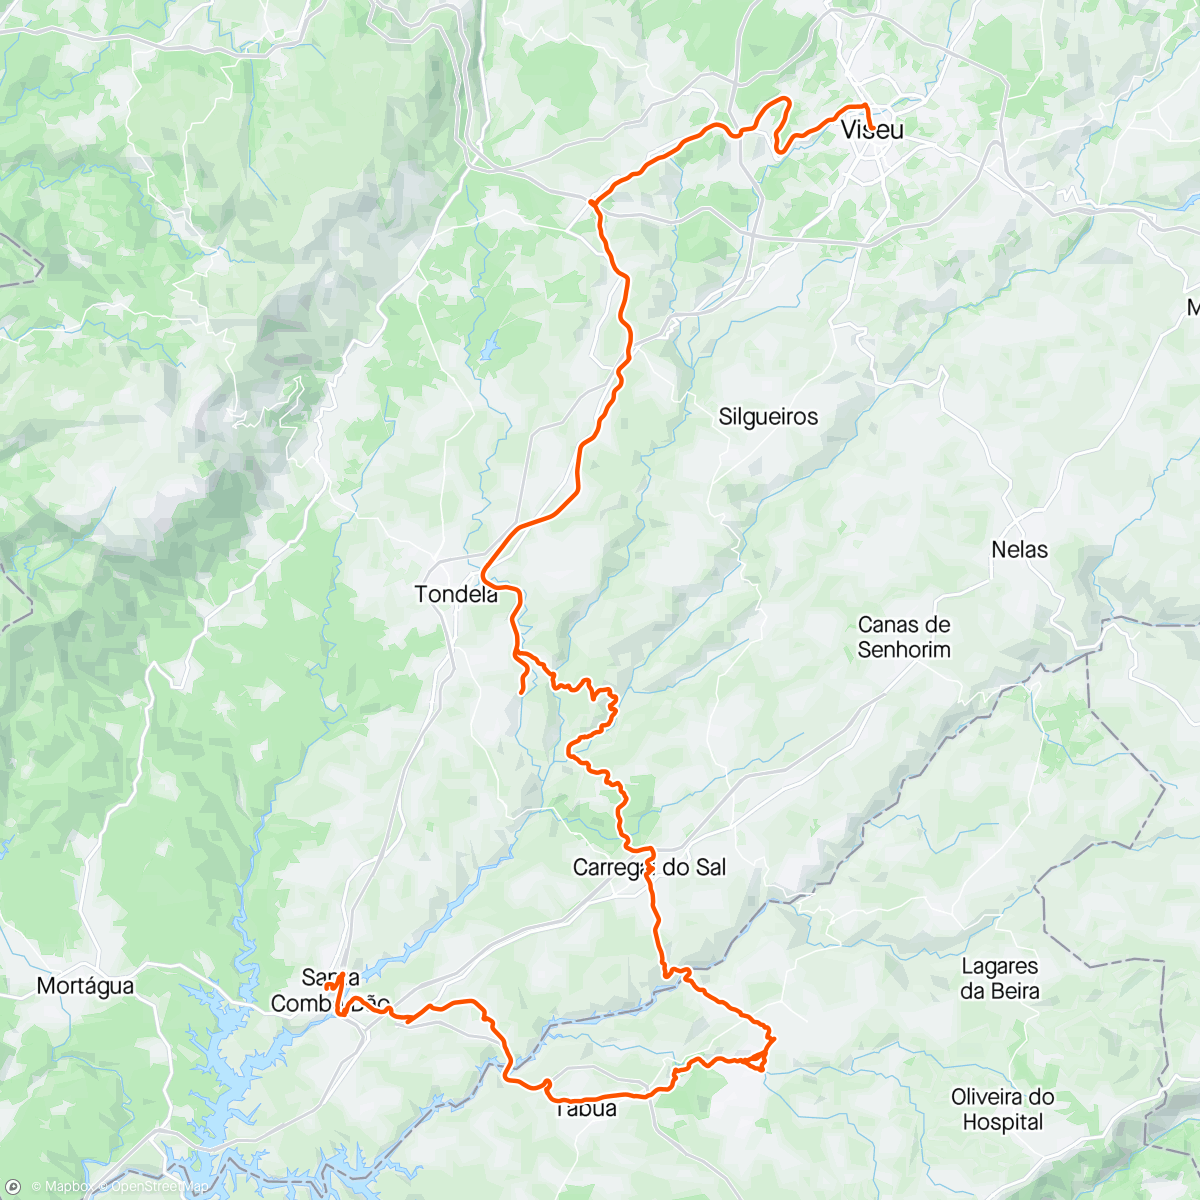 「Volta de bicicleta de montanha matinal」活動的地圖